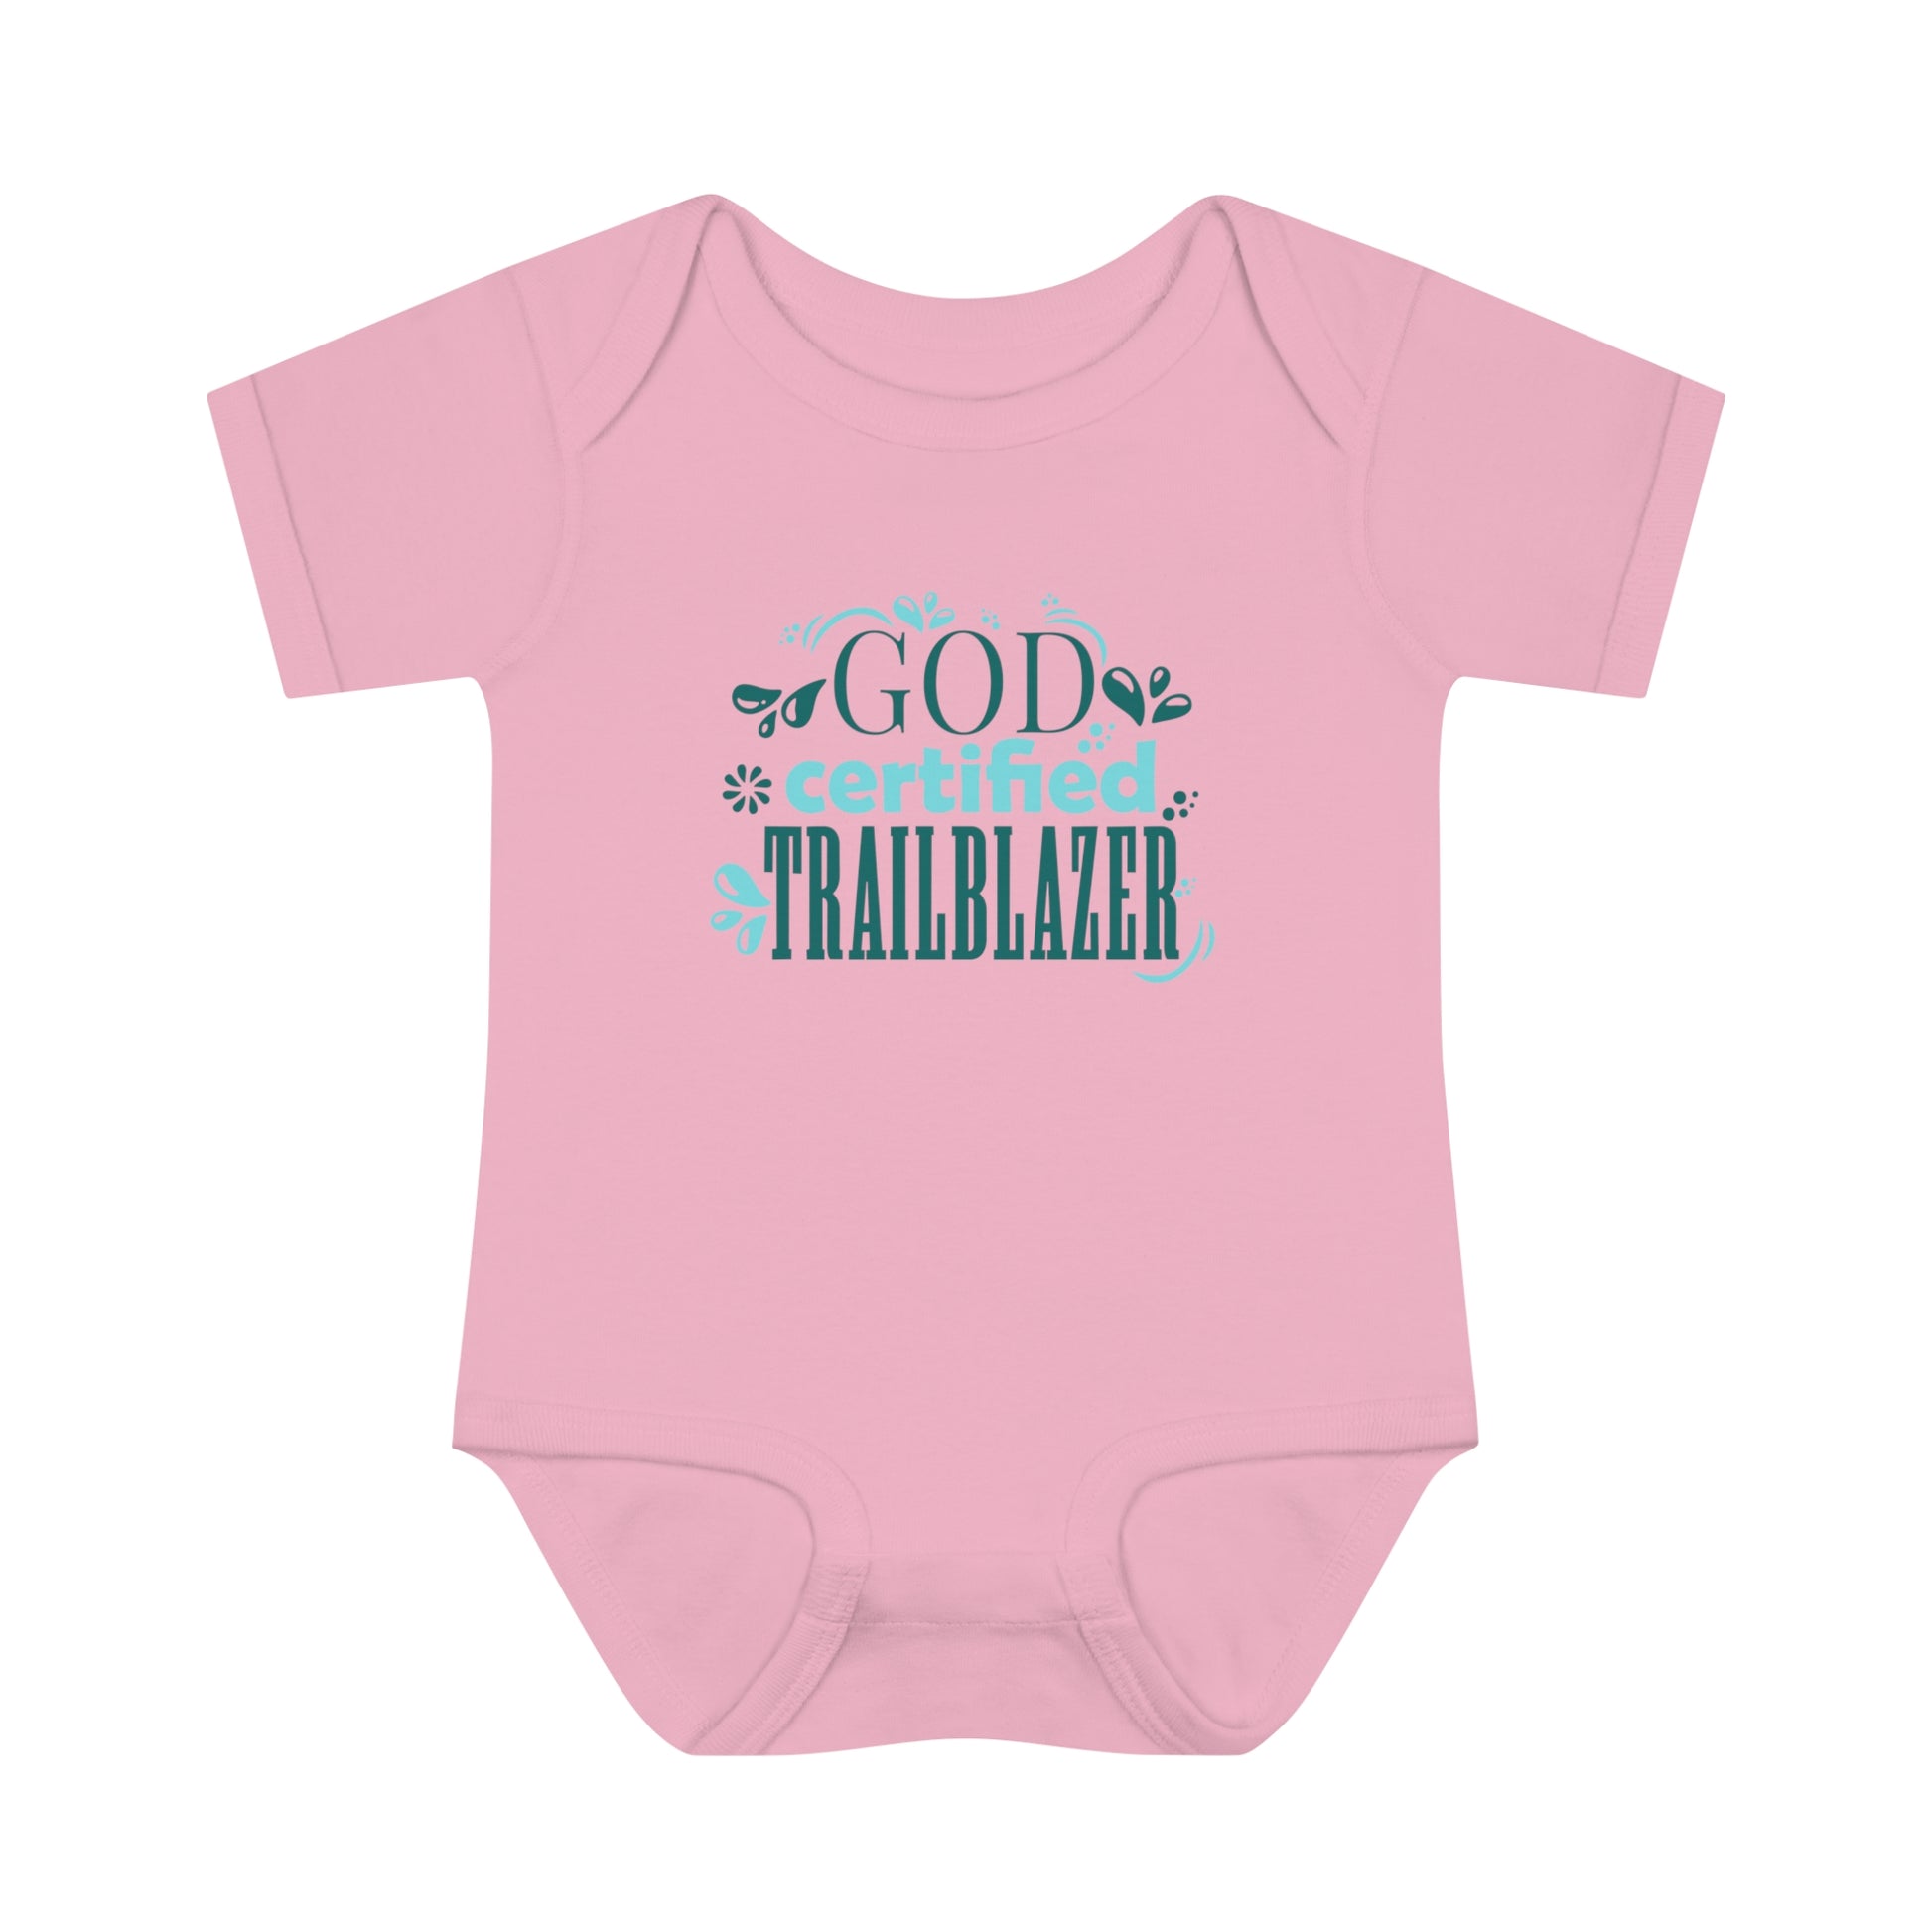 God Certified Trailblazer Christian Baby Onesie Printify